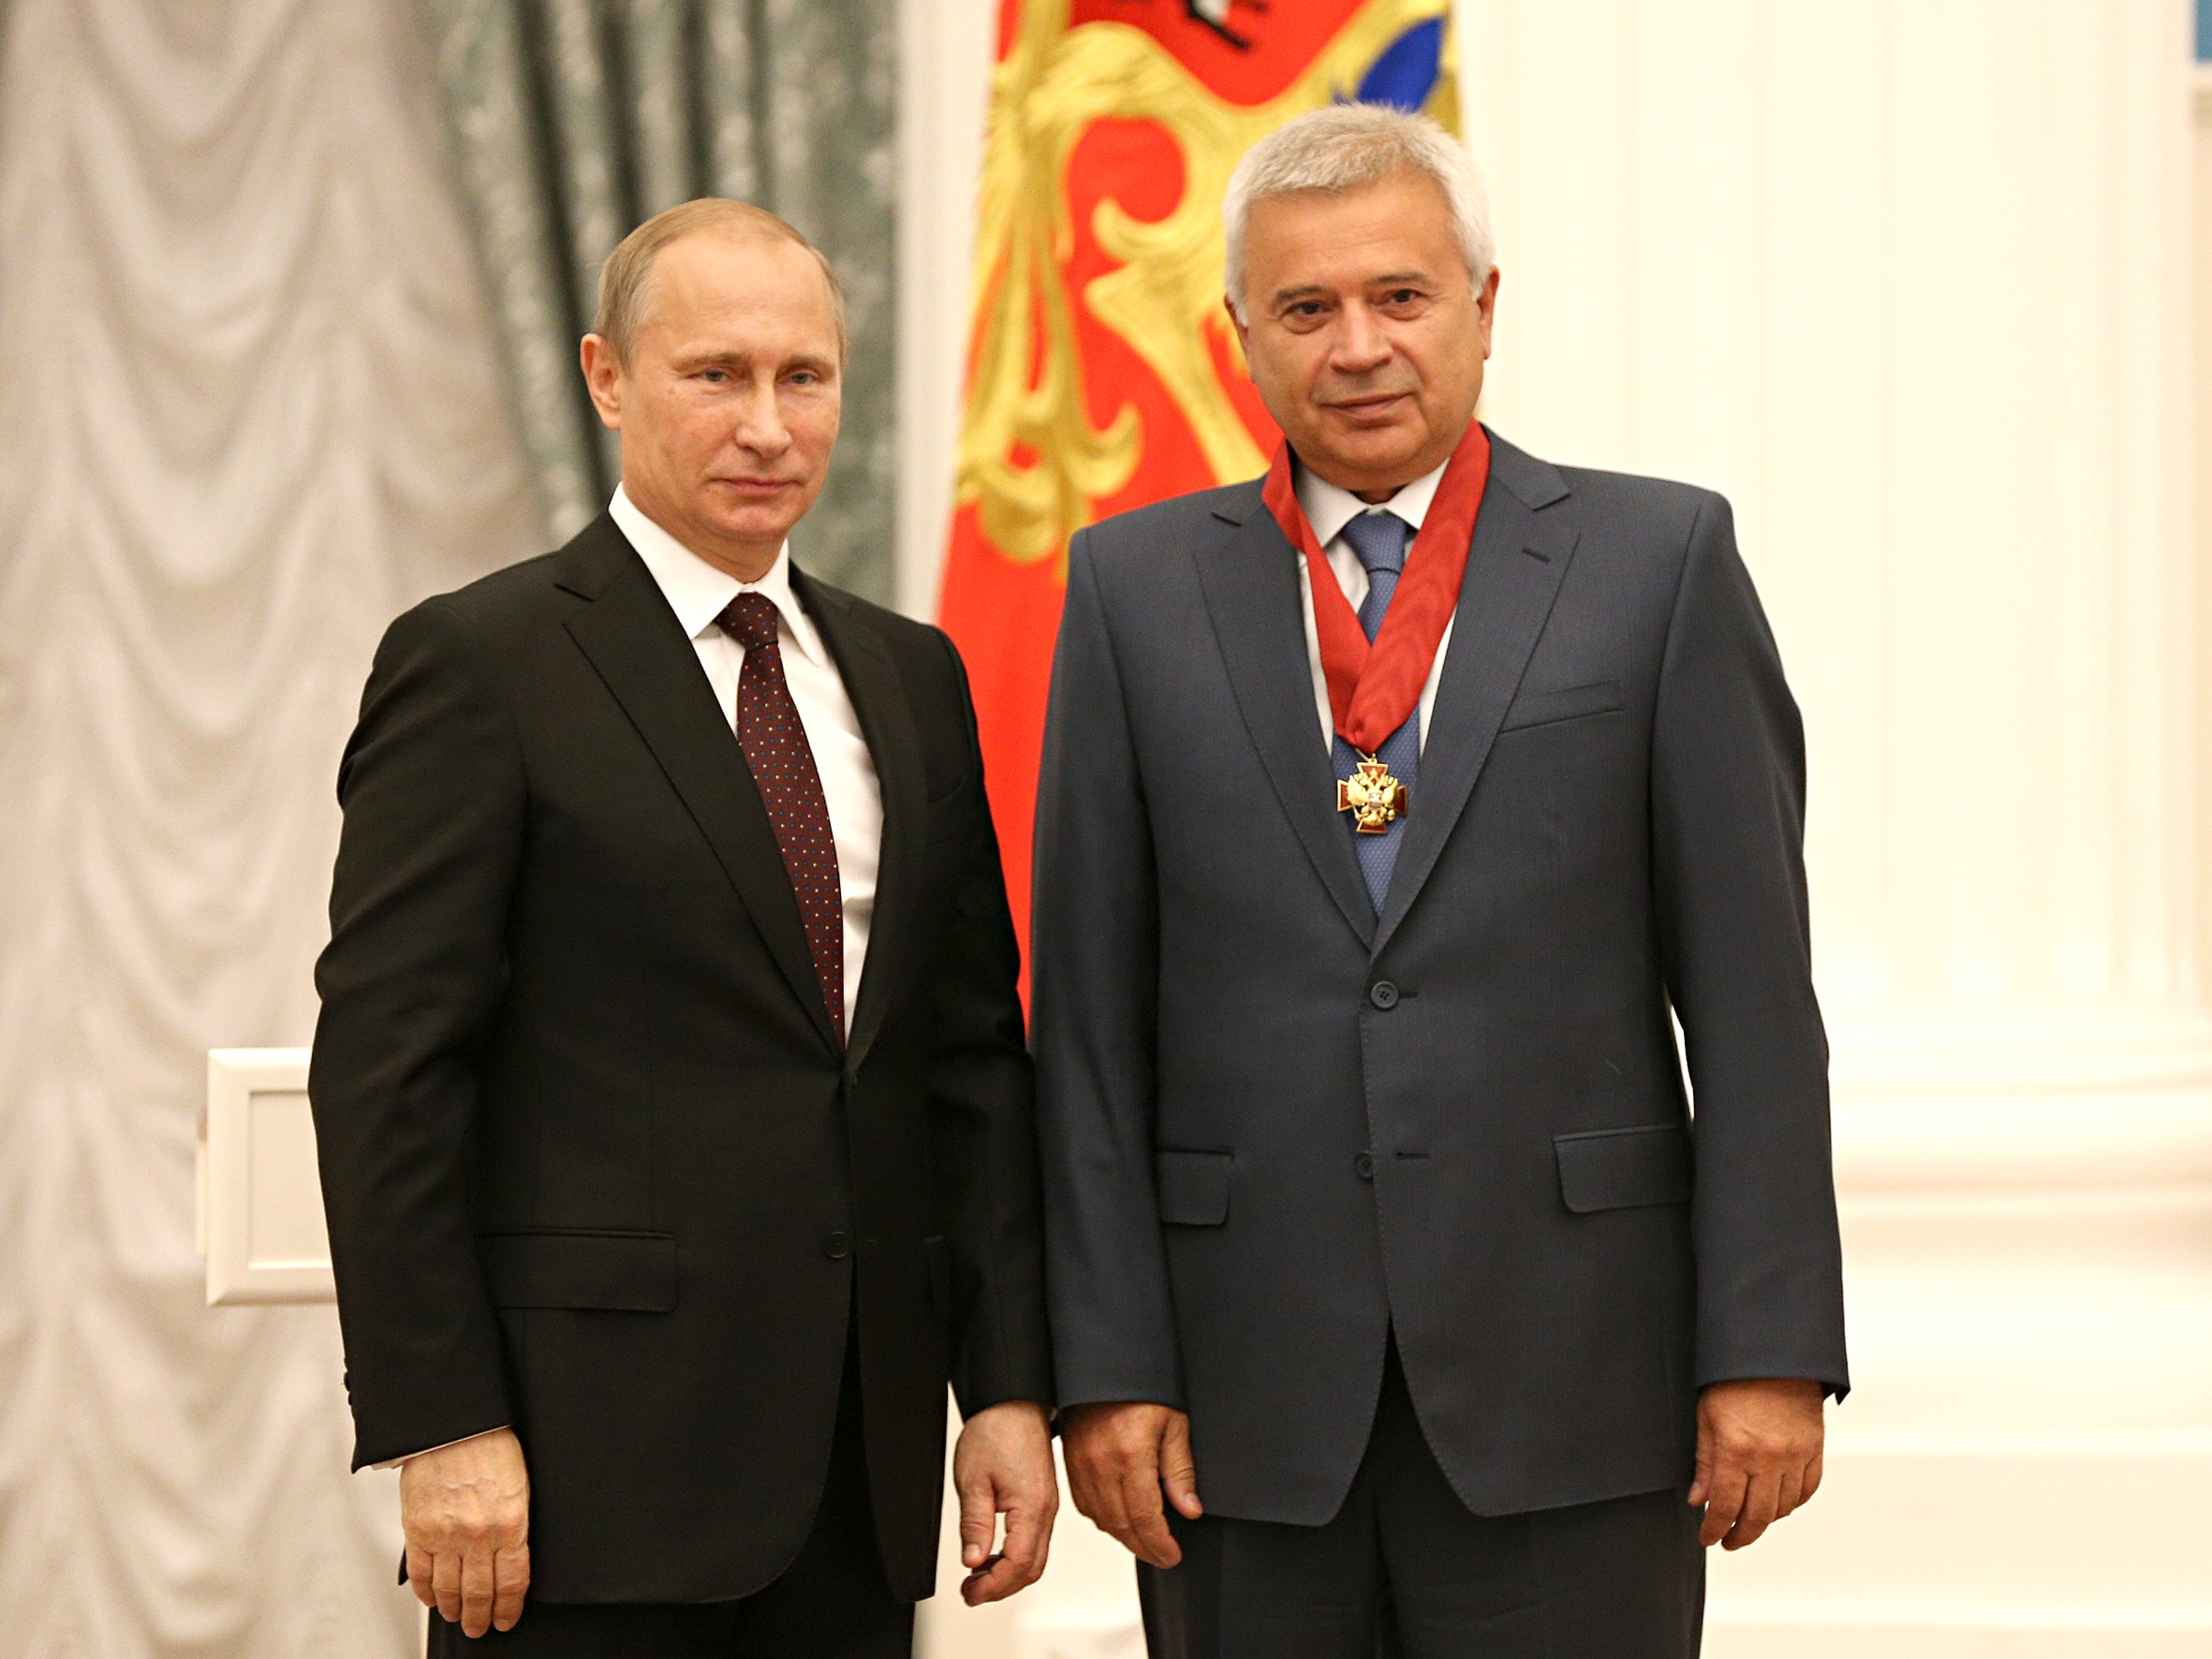 Владимир Путин наградил бывшего президента «Лукойла» Вагита Алекперова орденом «За заслуги перед Отечеством» I степени